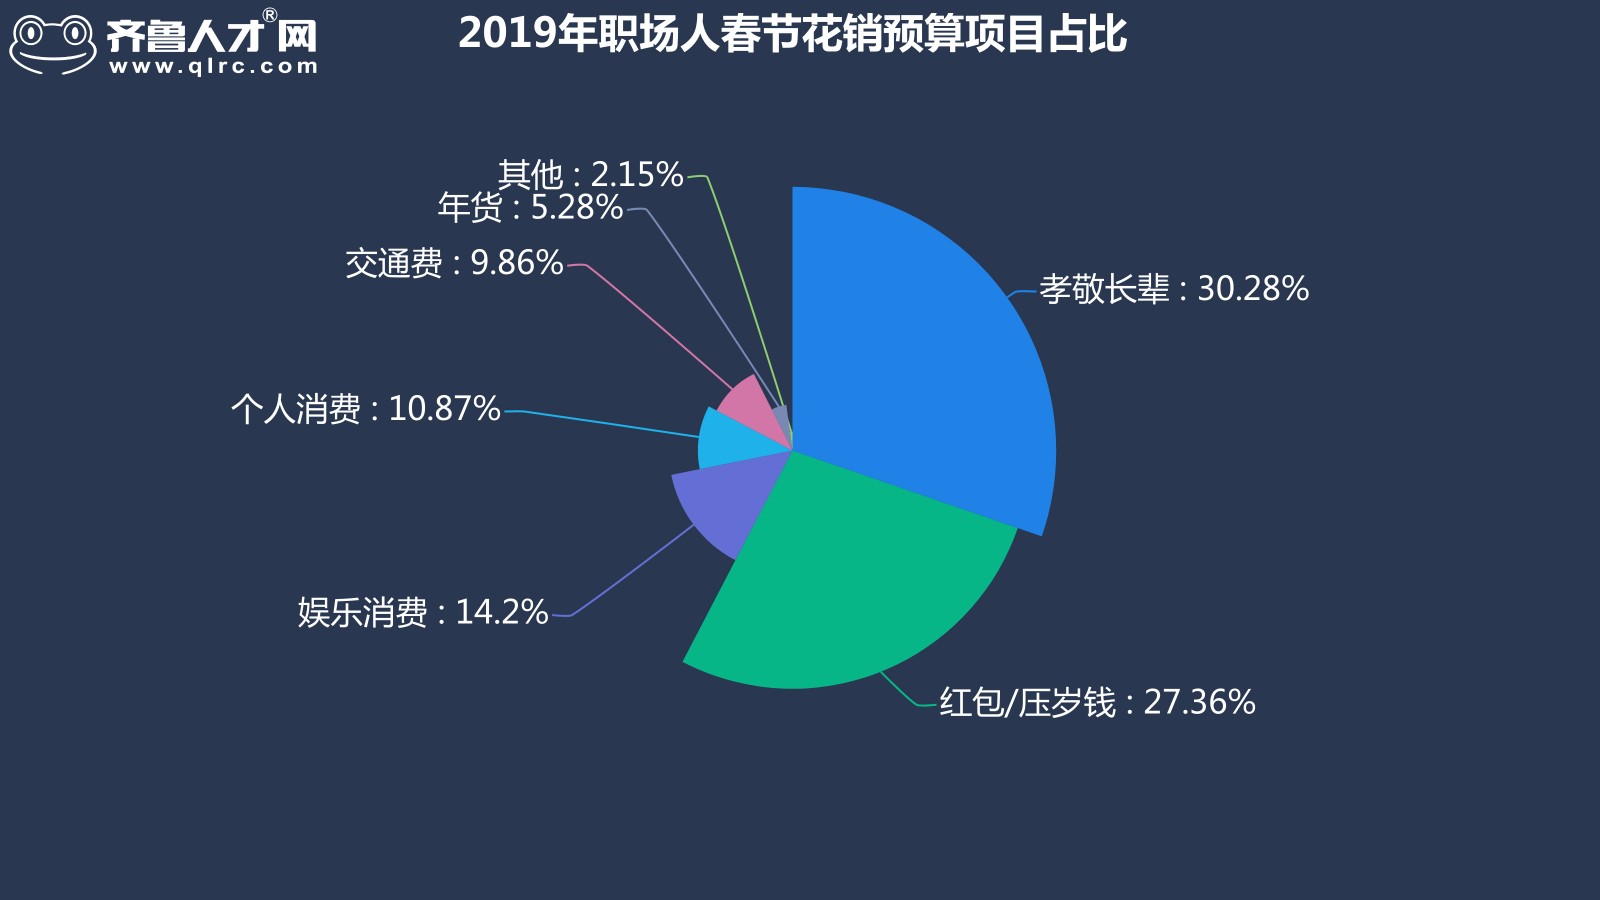 齊魯人才網-2019年山東四季度薪酬數據圖2.jpg